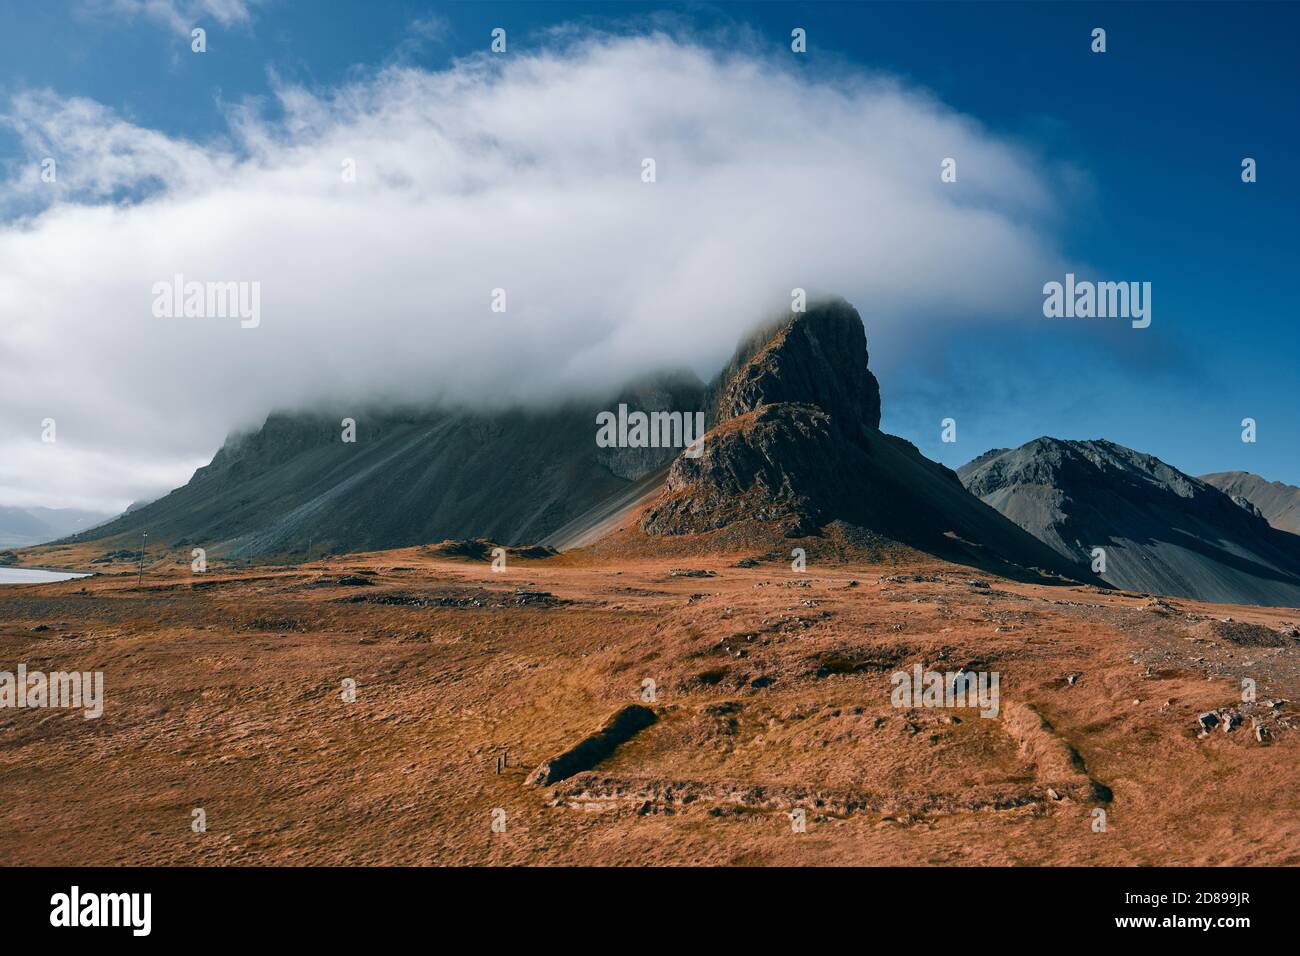 Une formation minimale de nuages bas au-dessus d'un sommet de montagne d'Islande paysage - hauts de montagne à nuages bas - formation de nuages de montagne - Eystrahorn Islande Banque D'Images